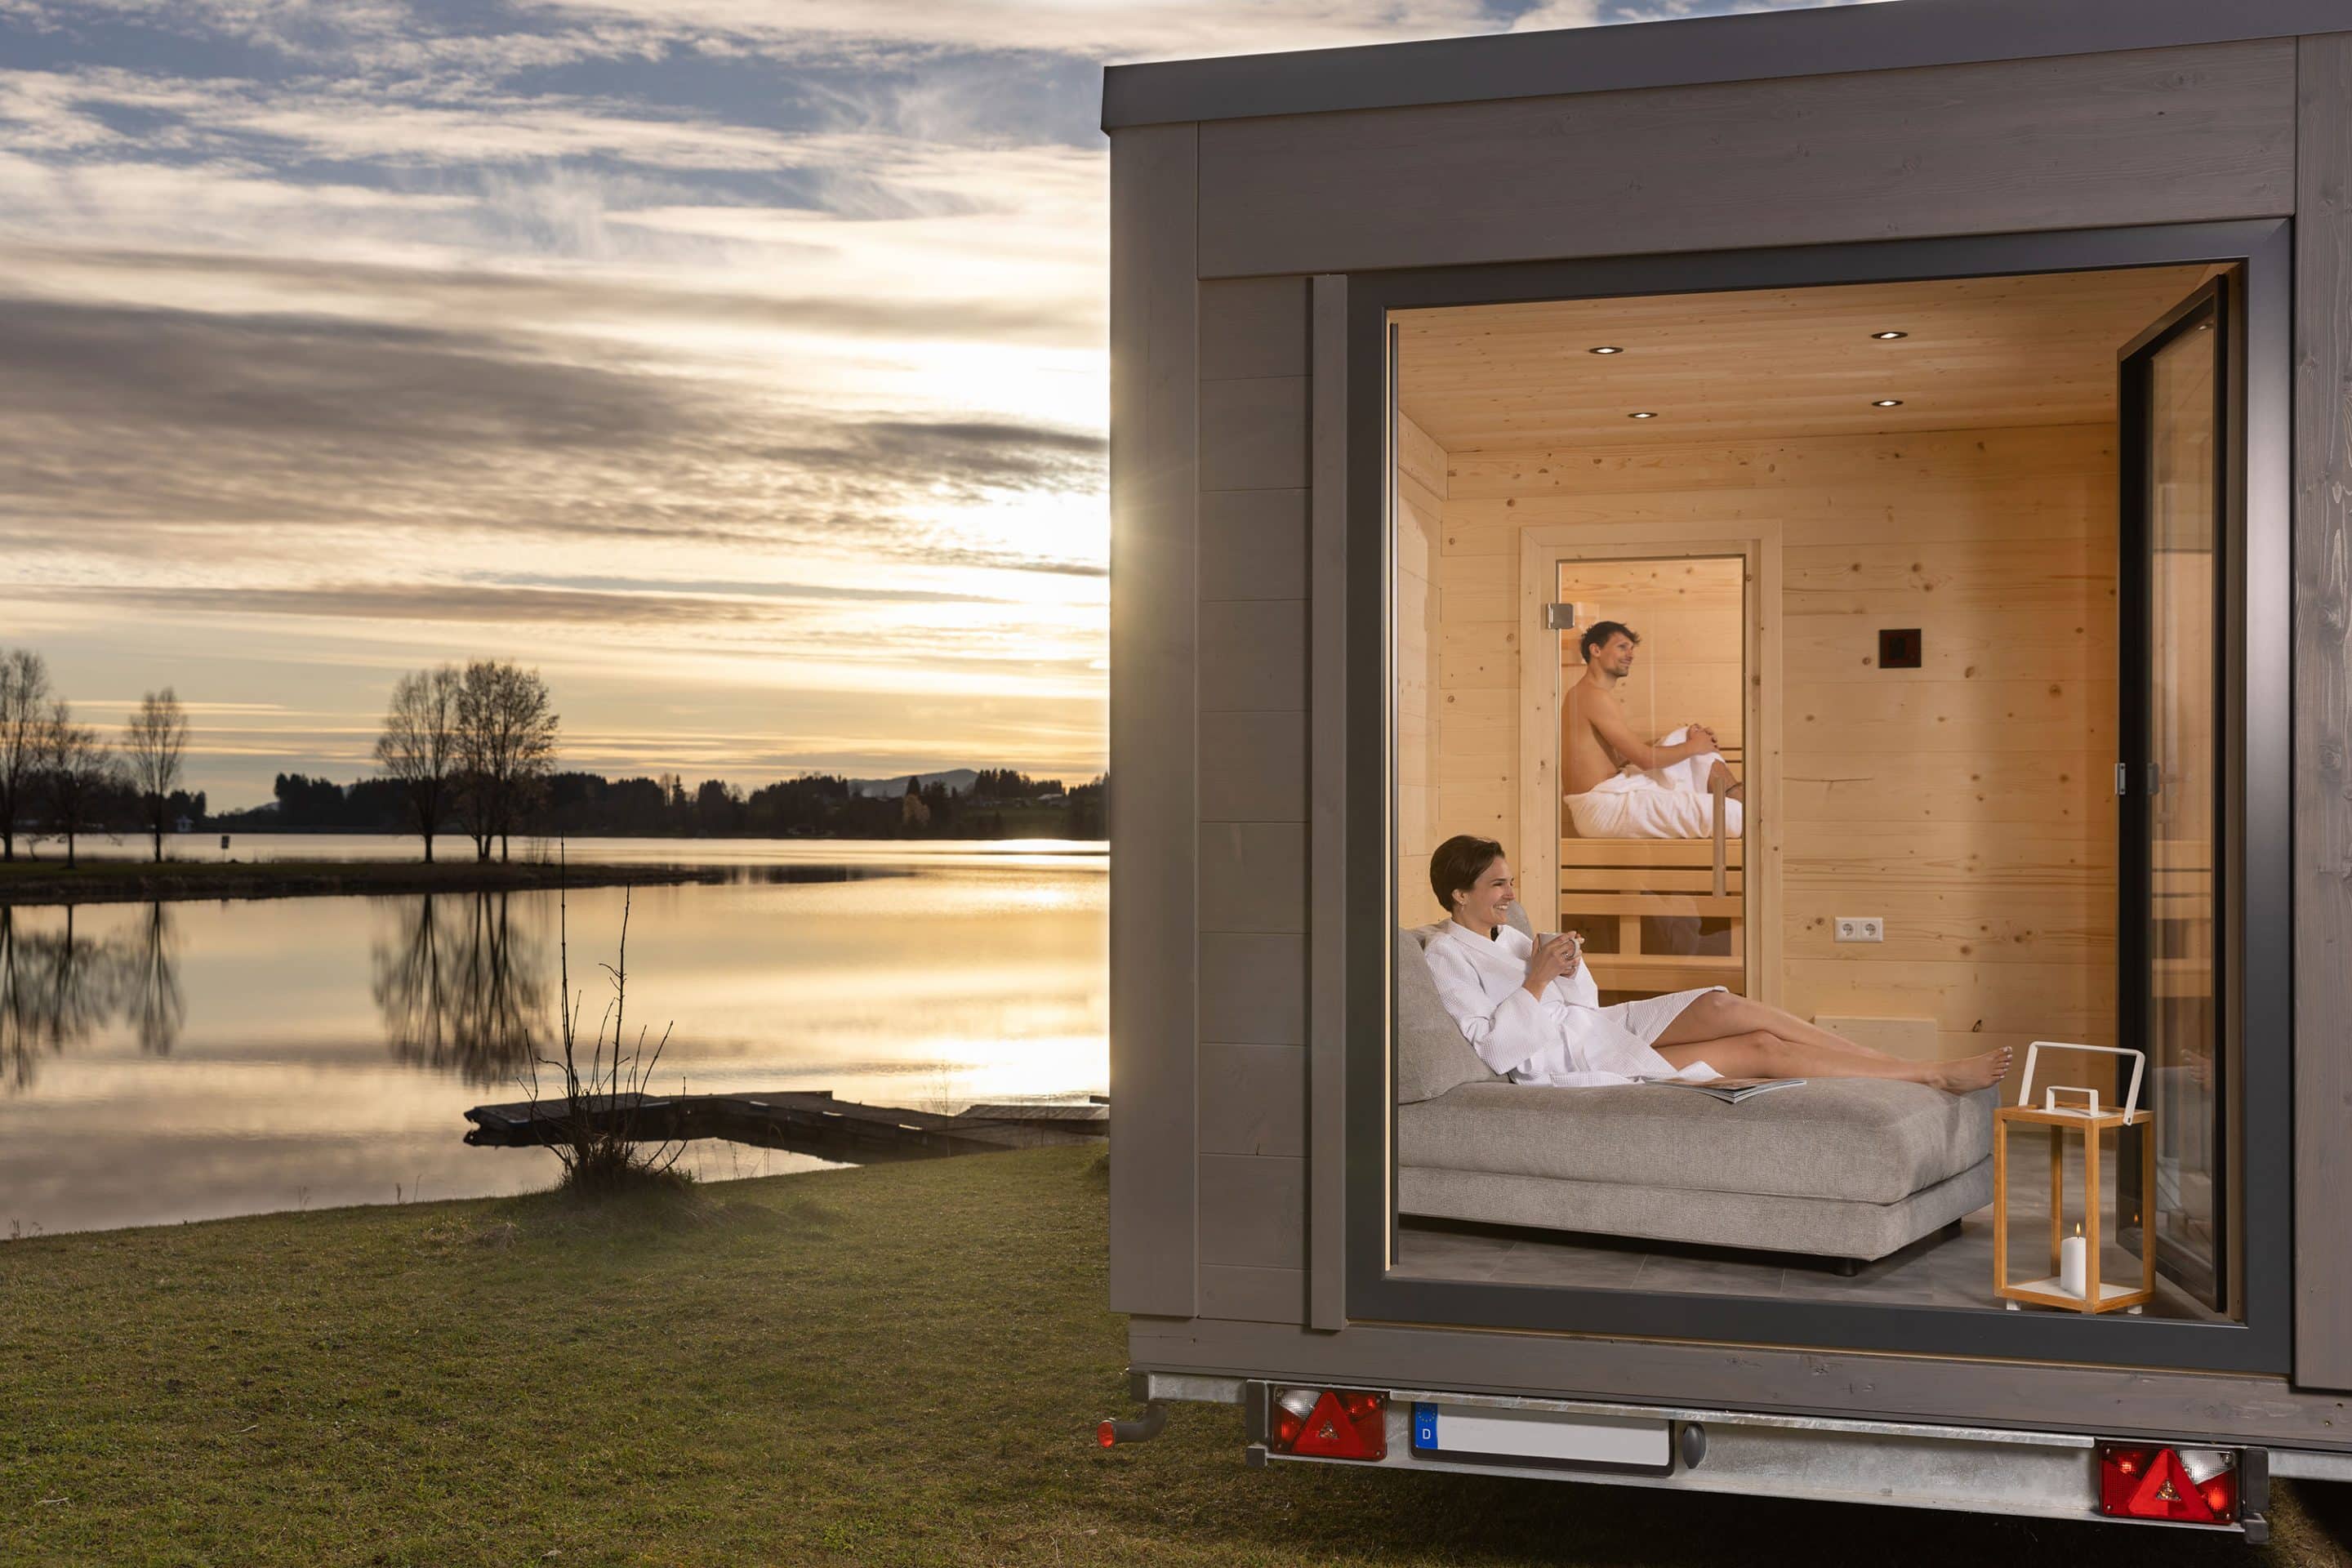 Ein Traum: Die mobile Sauna2go von Hummel, die sich vor dem Kauf testen und mieten lässt. Foto: Louis Zuchtriegel/Hummel Blockhaus